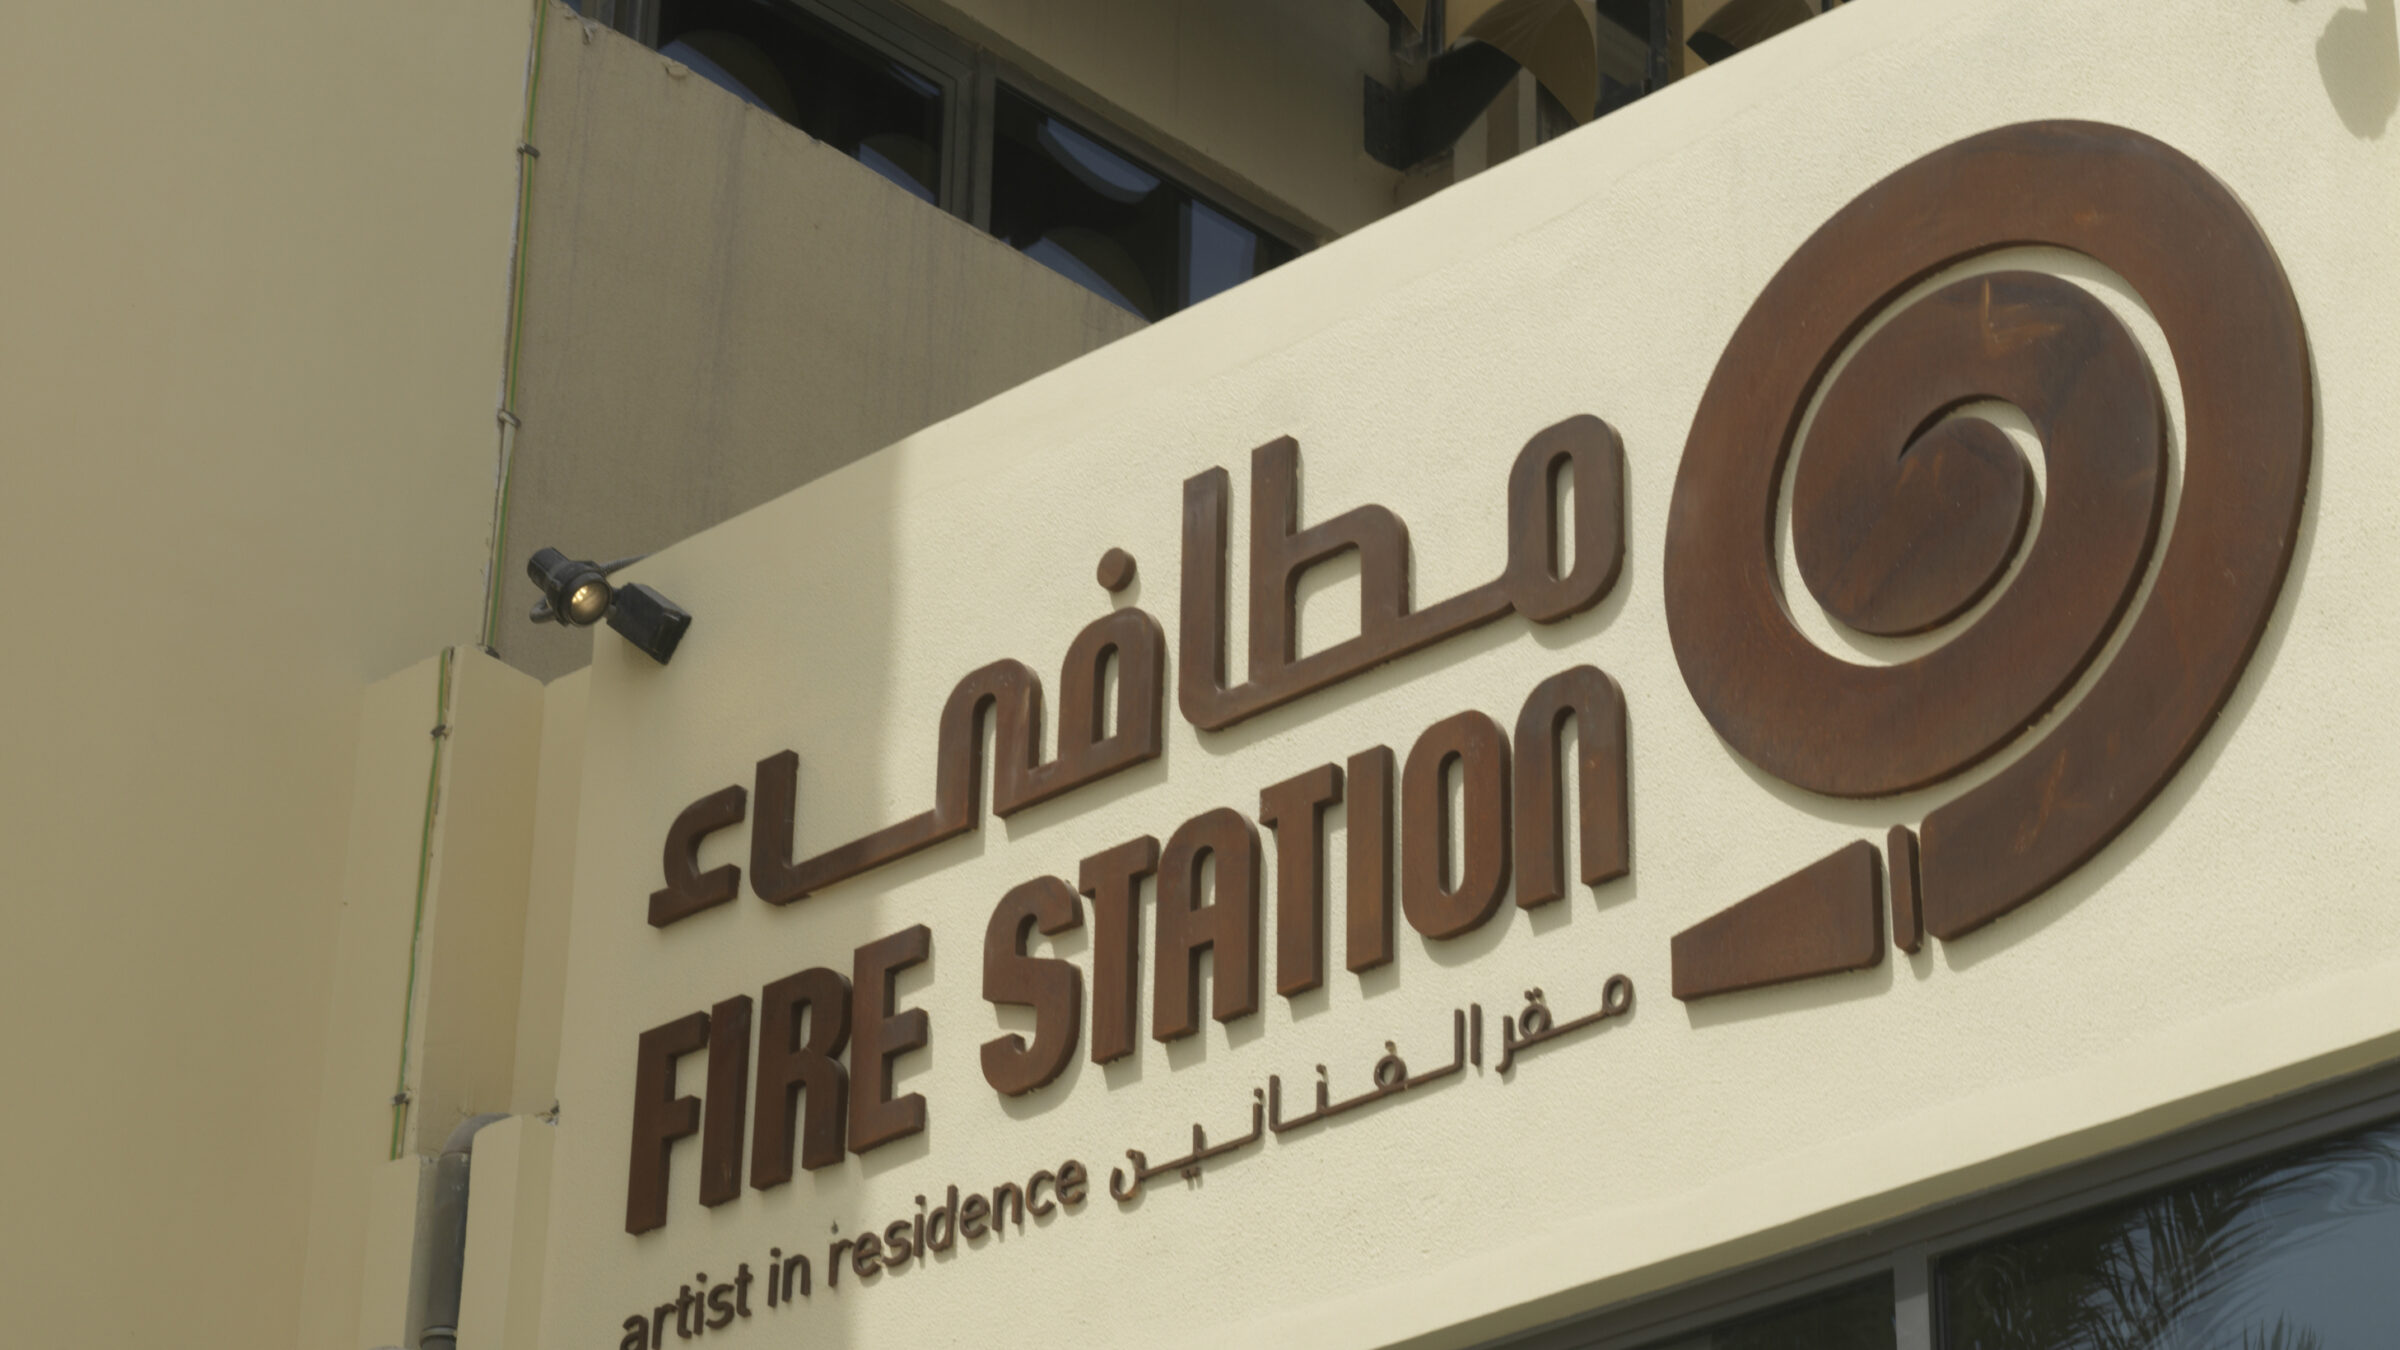 Fire Station O 8411402 1 (1)